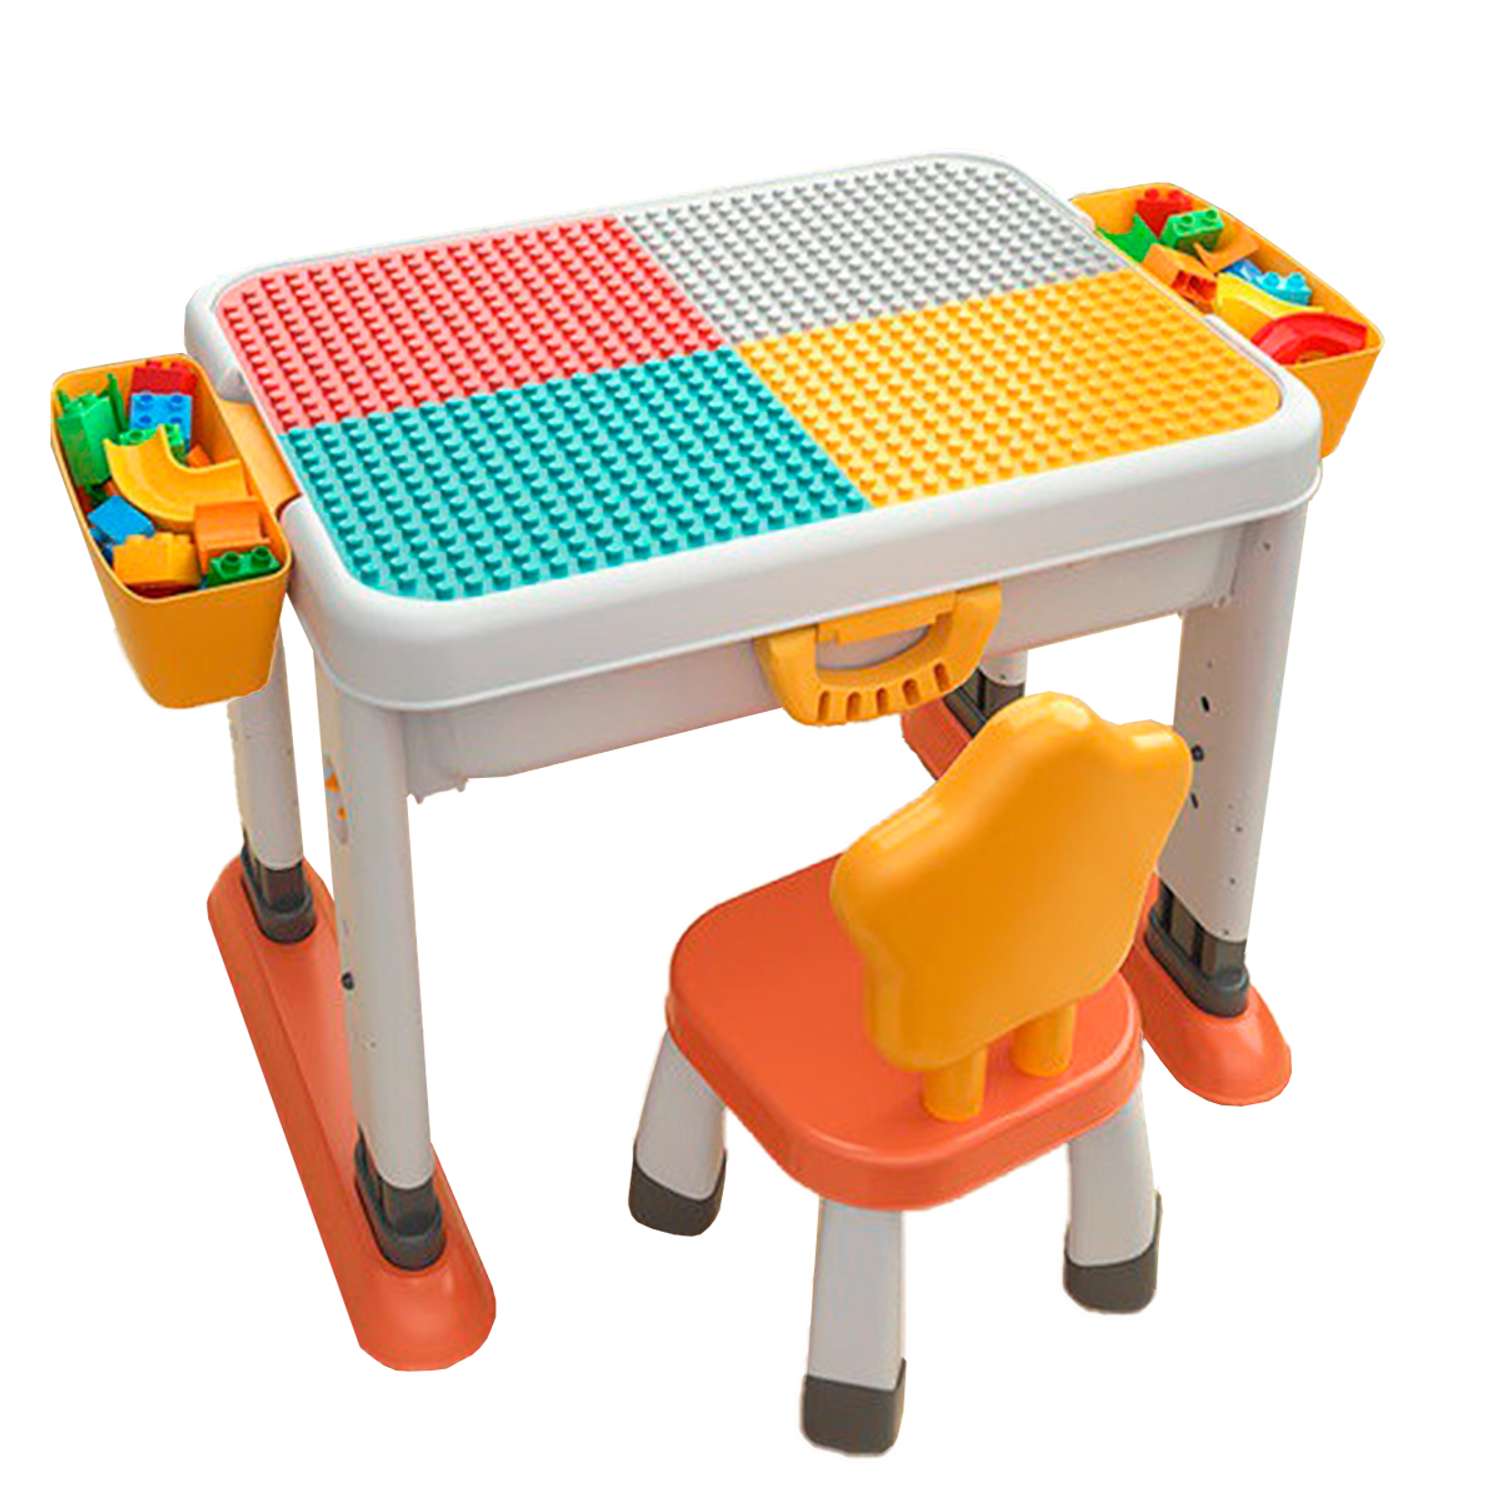 Развивающий детский столик WiMI со стулом и контейнером для хранения - фото 3